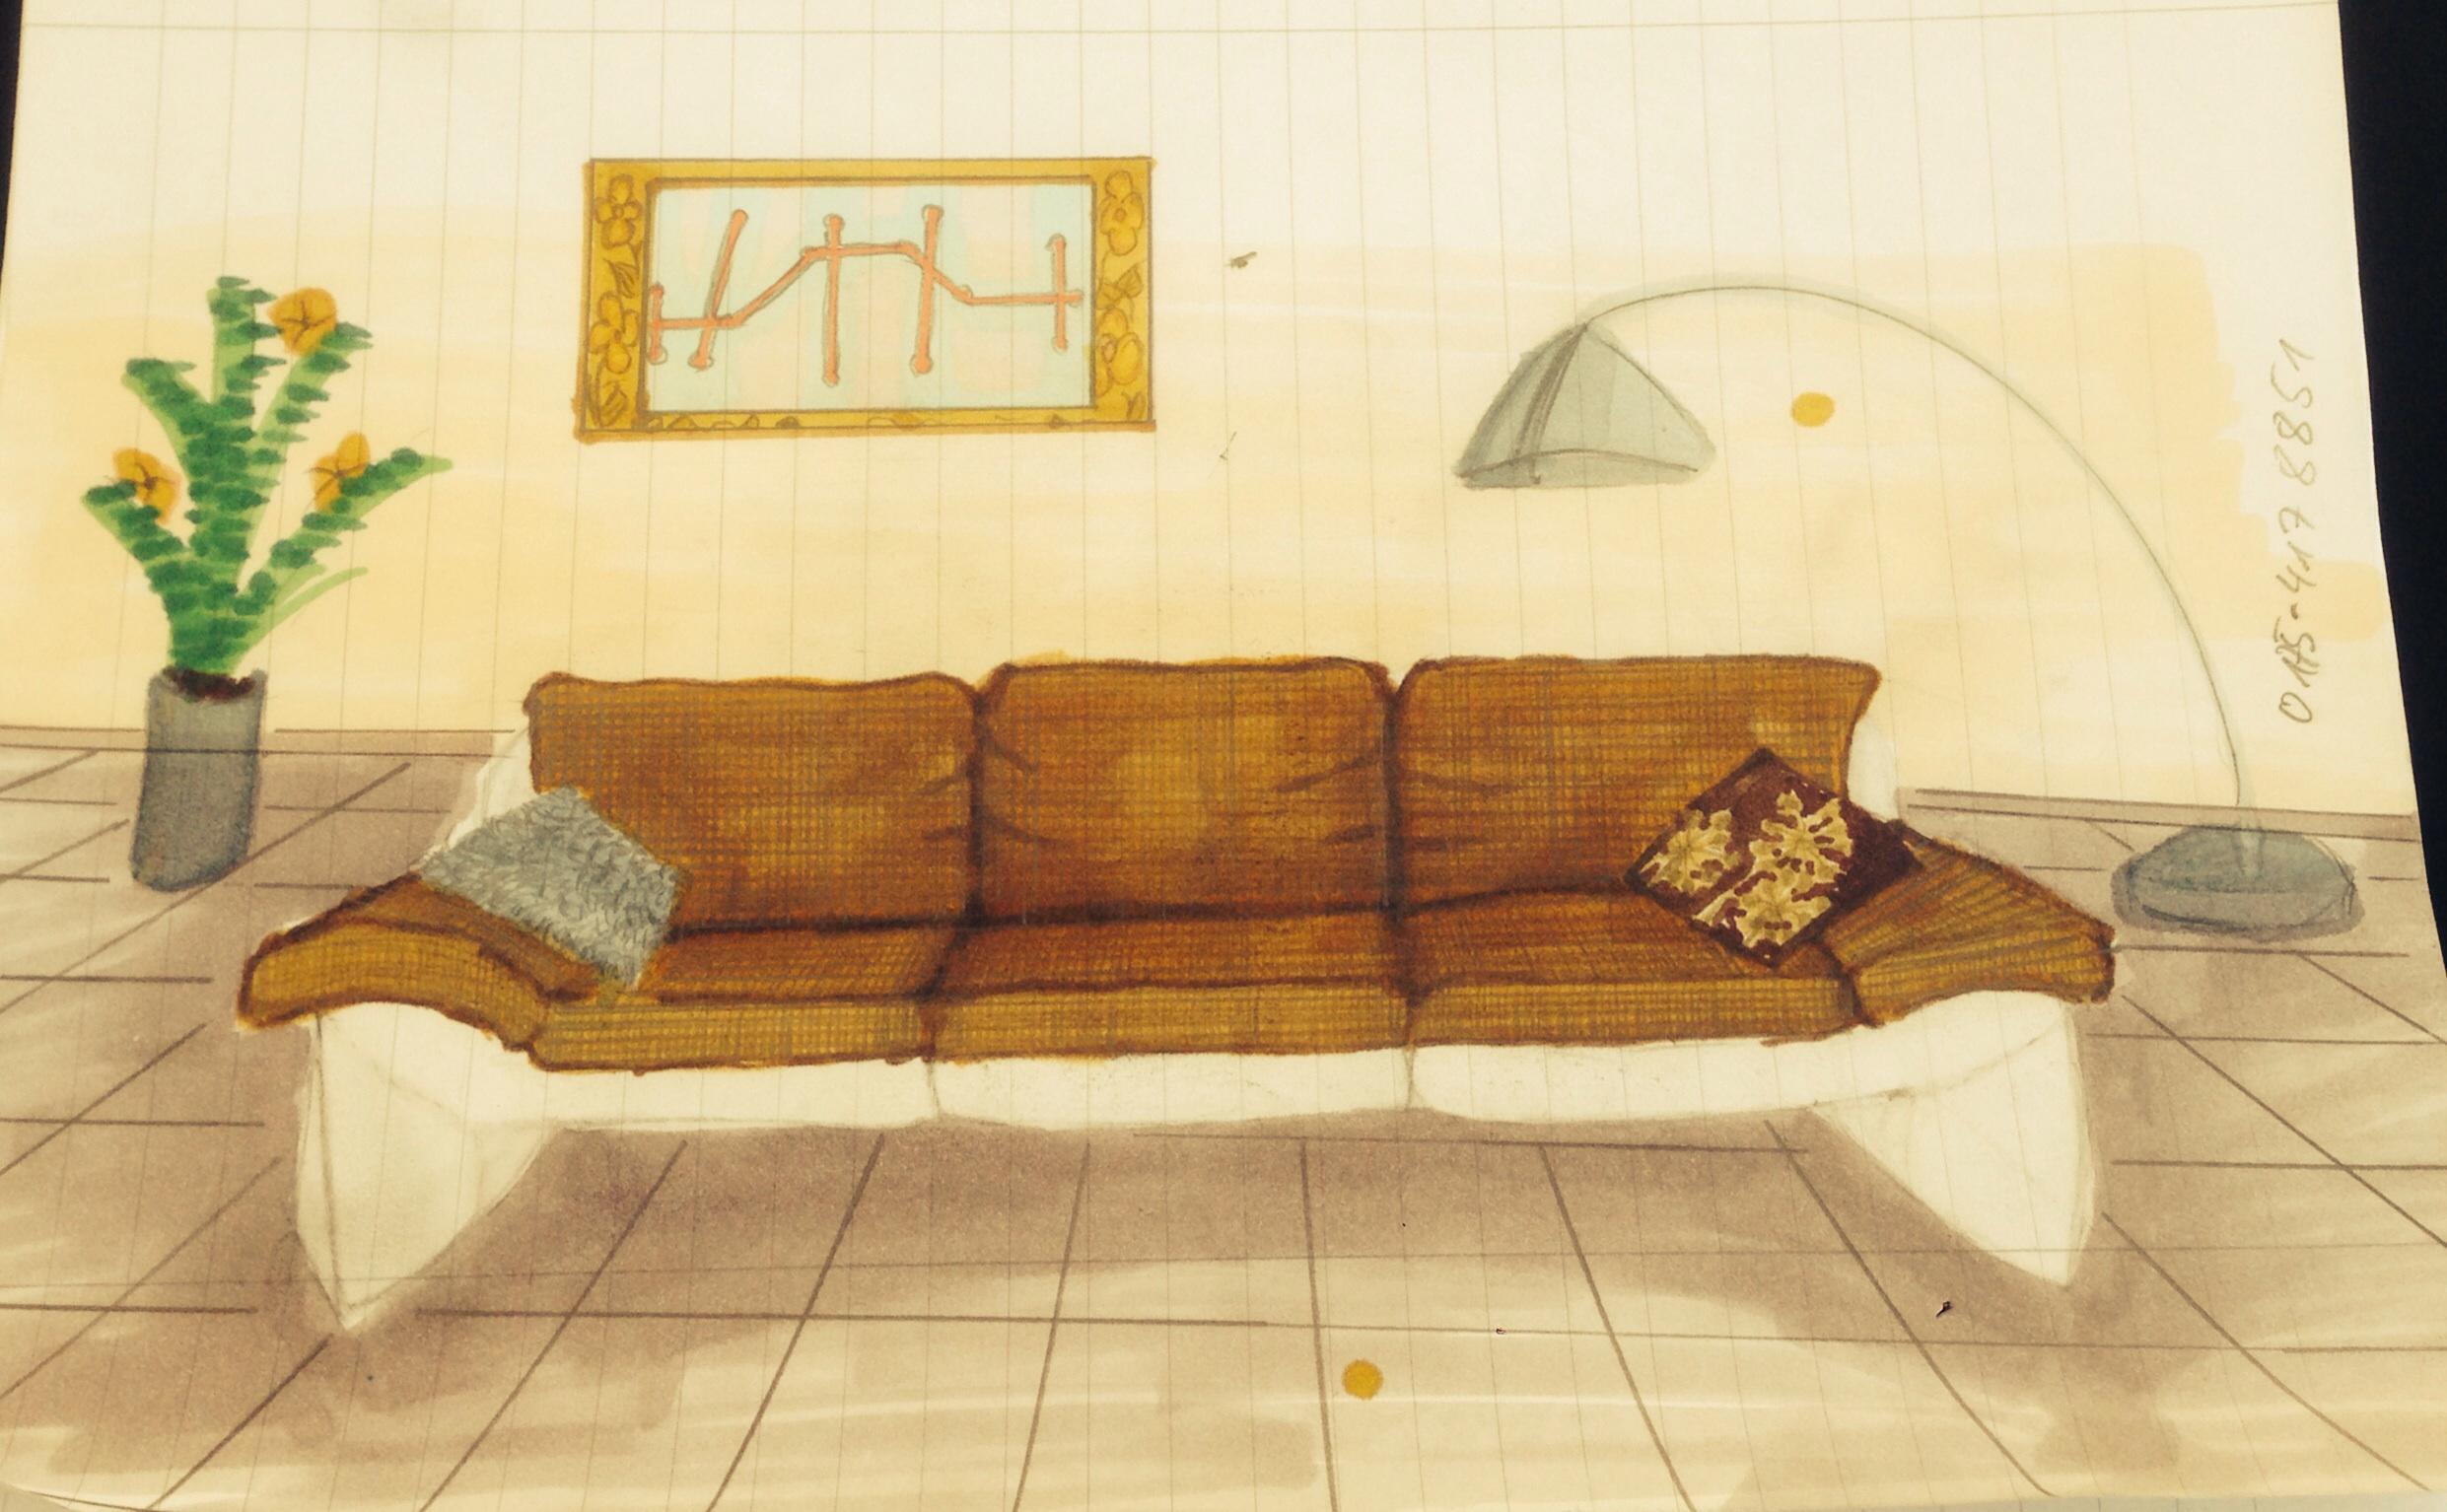 3er Sofa Zeichnung #sofa #zeichnung ©Scheming Wohndesign